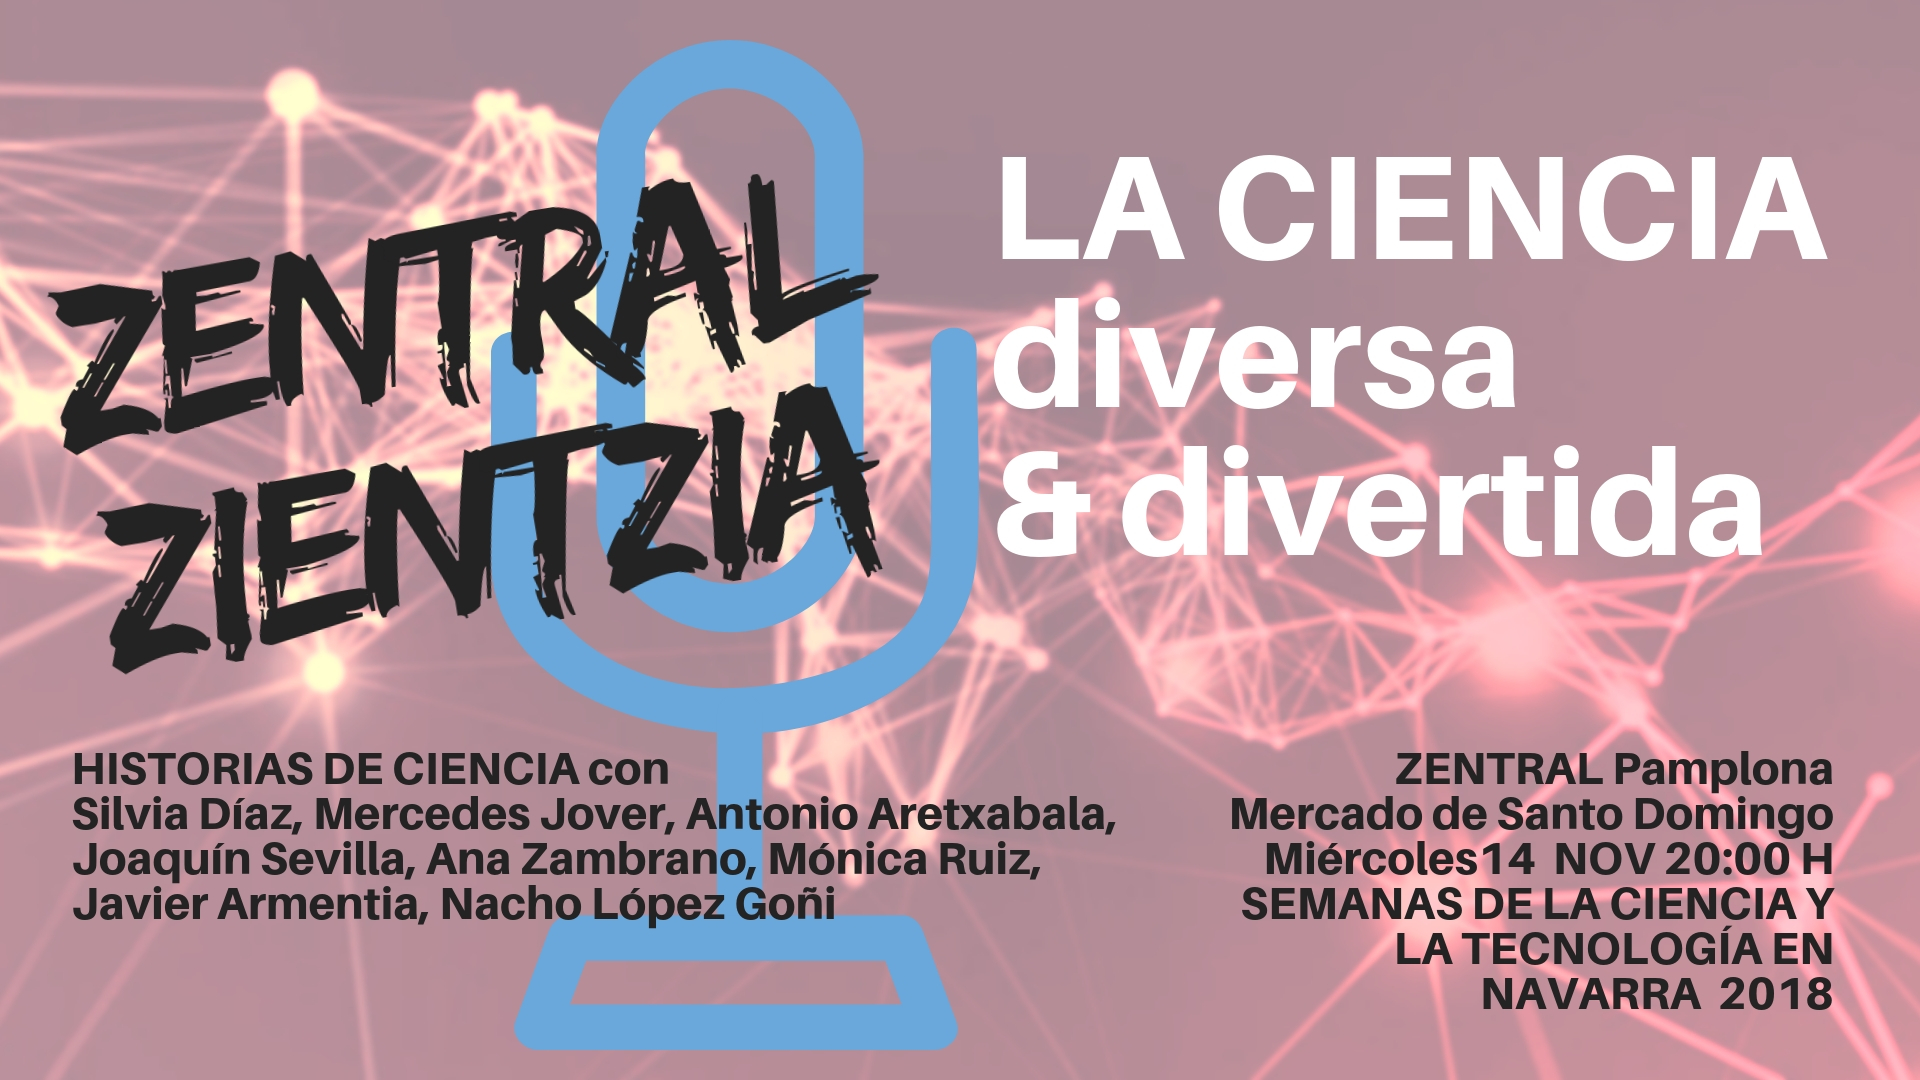 Zentral Zientzia en las Semanas de la Ciencia de Navarra 2018